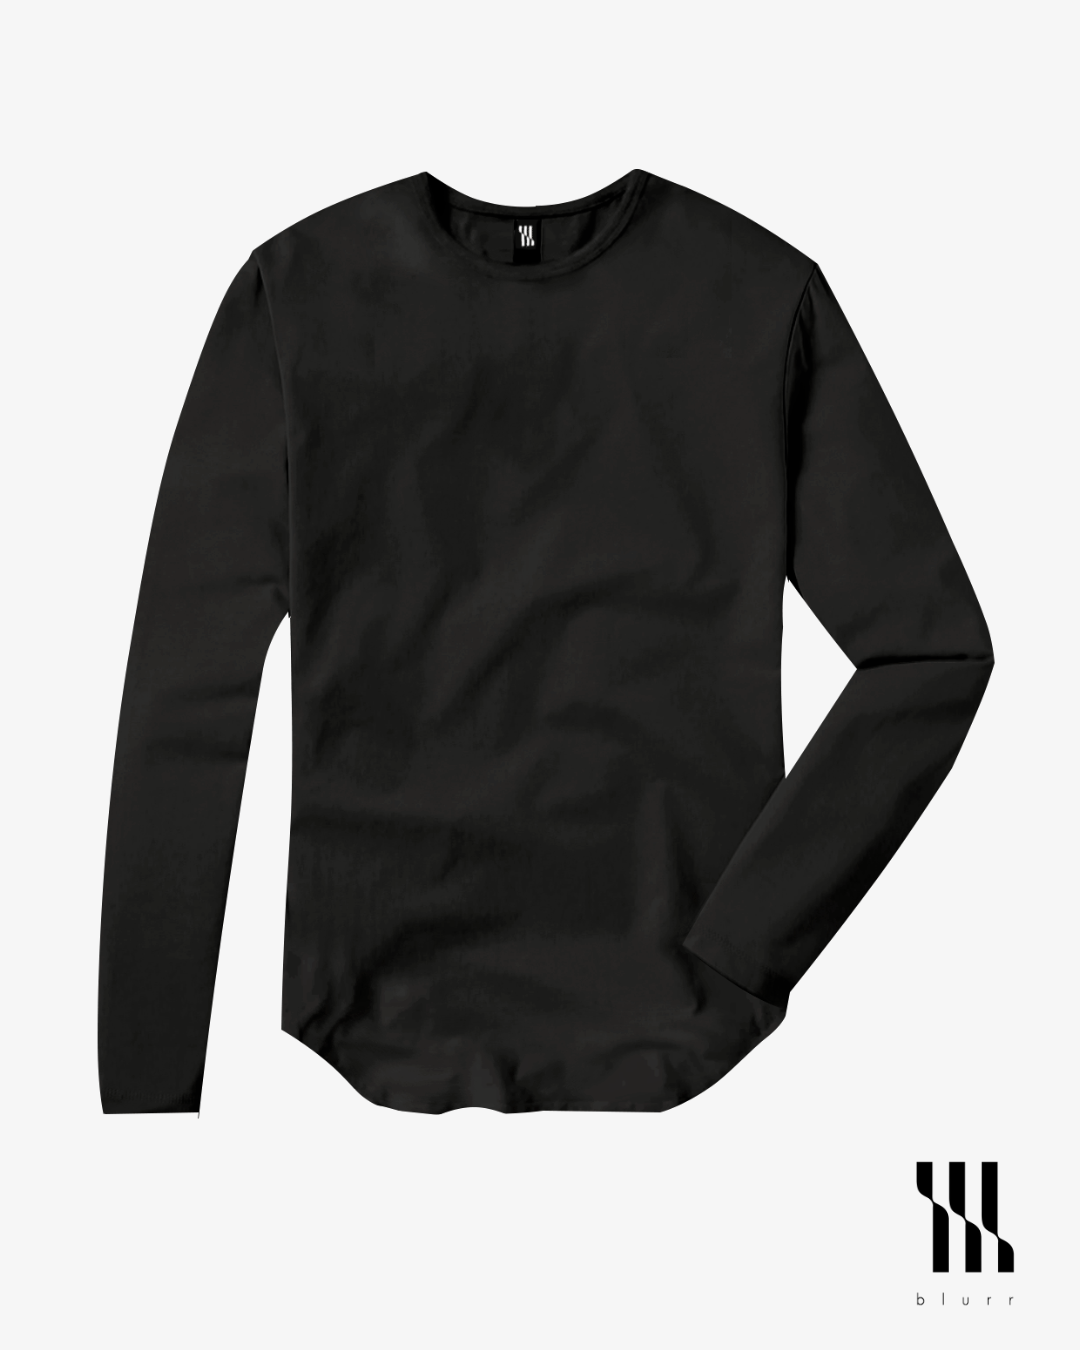 All Black T-shirt - Long Sleeve